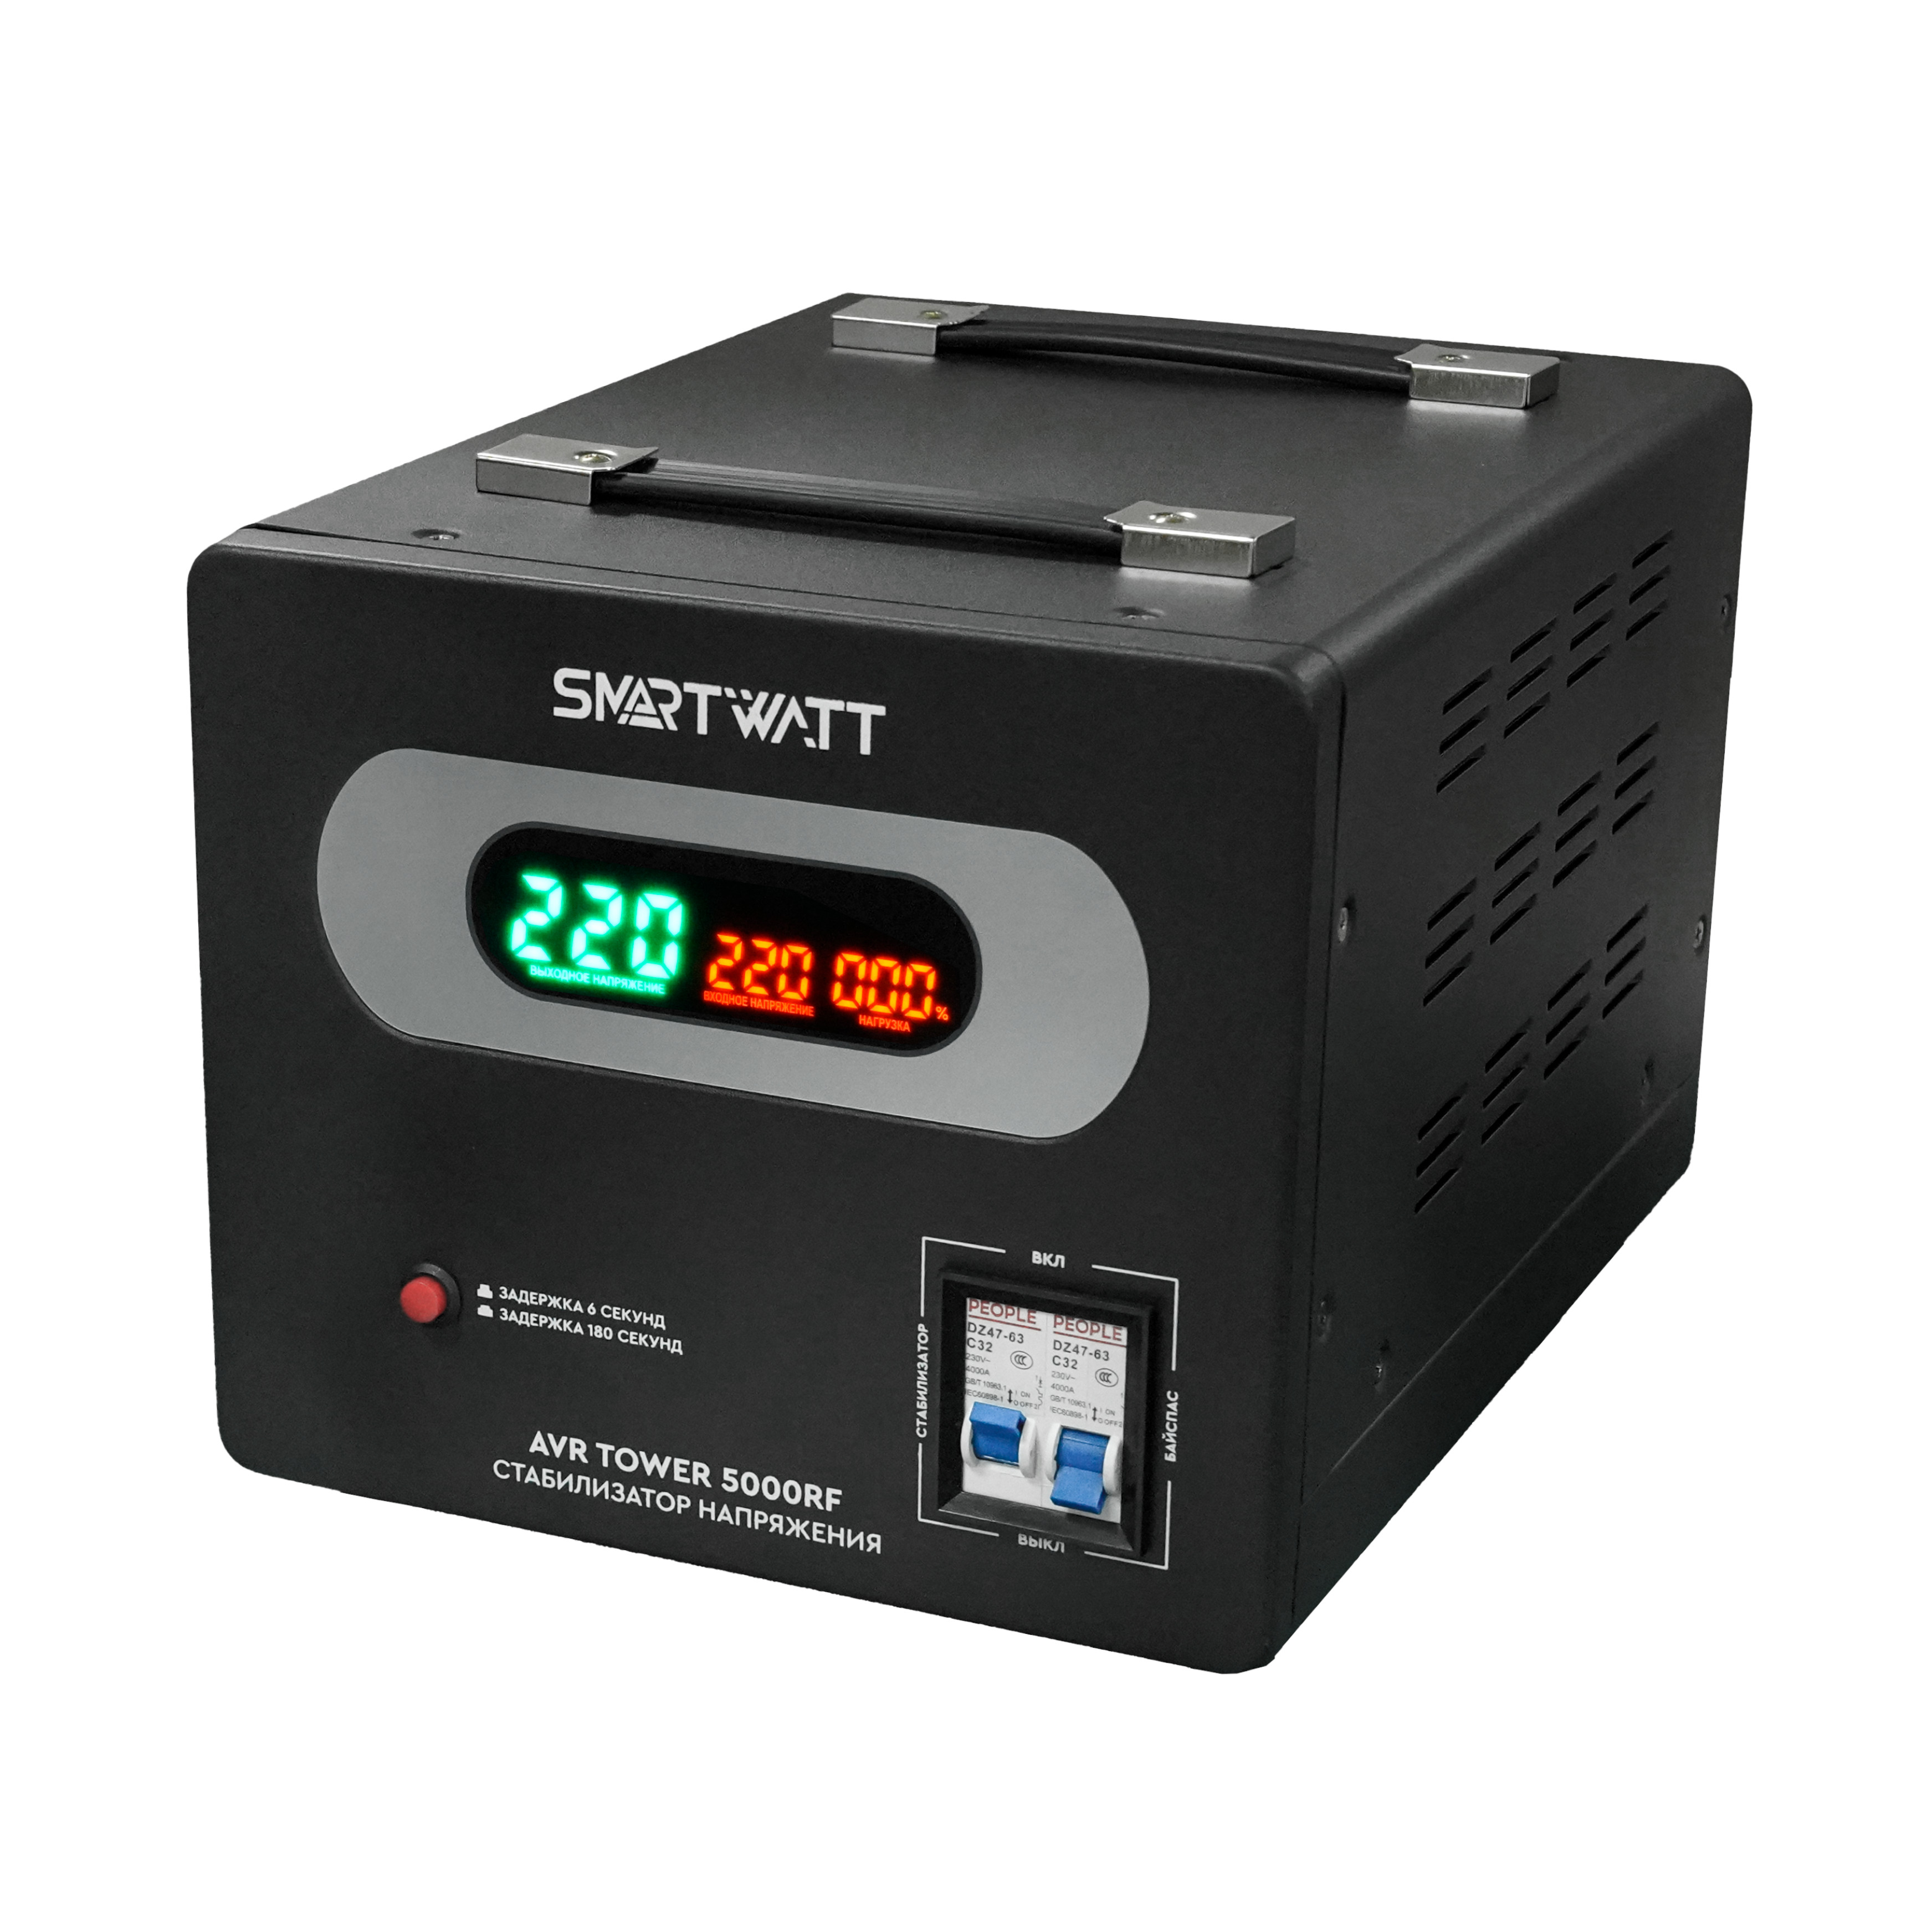 Стабилизатор напряжения SMARTWATT AVR TOWER 5000RF, 5000 VA, клеммная колодка, черный (4512020370005)